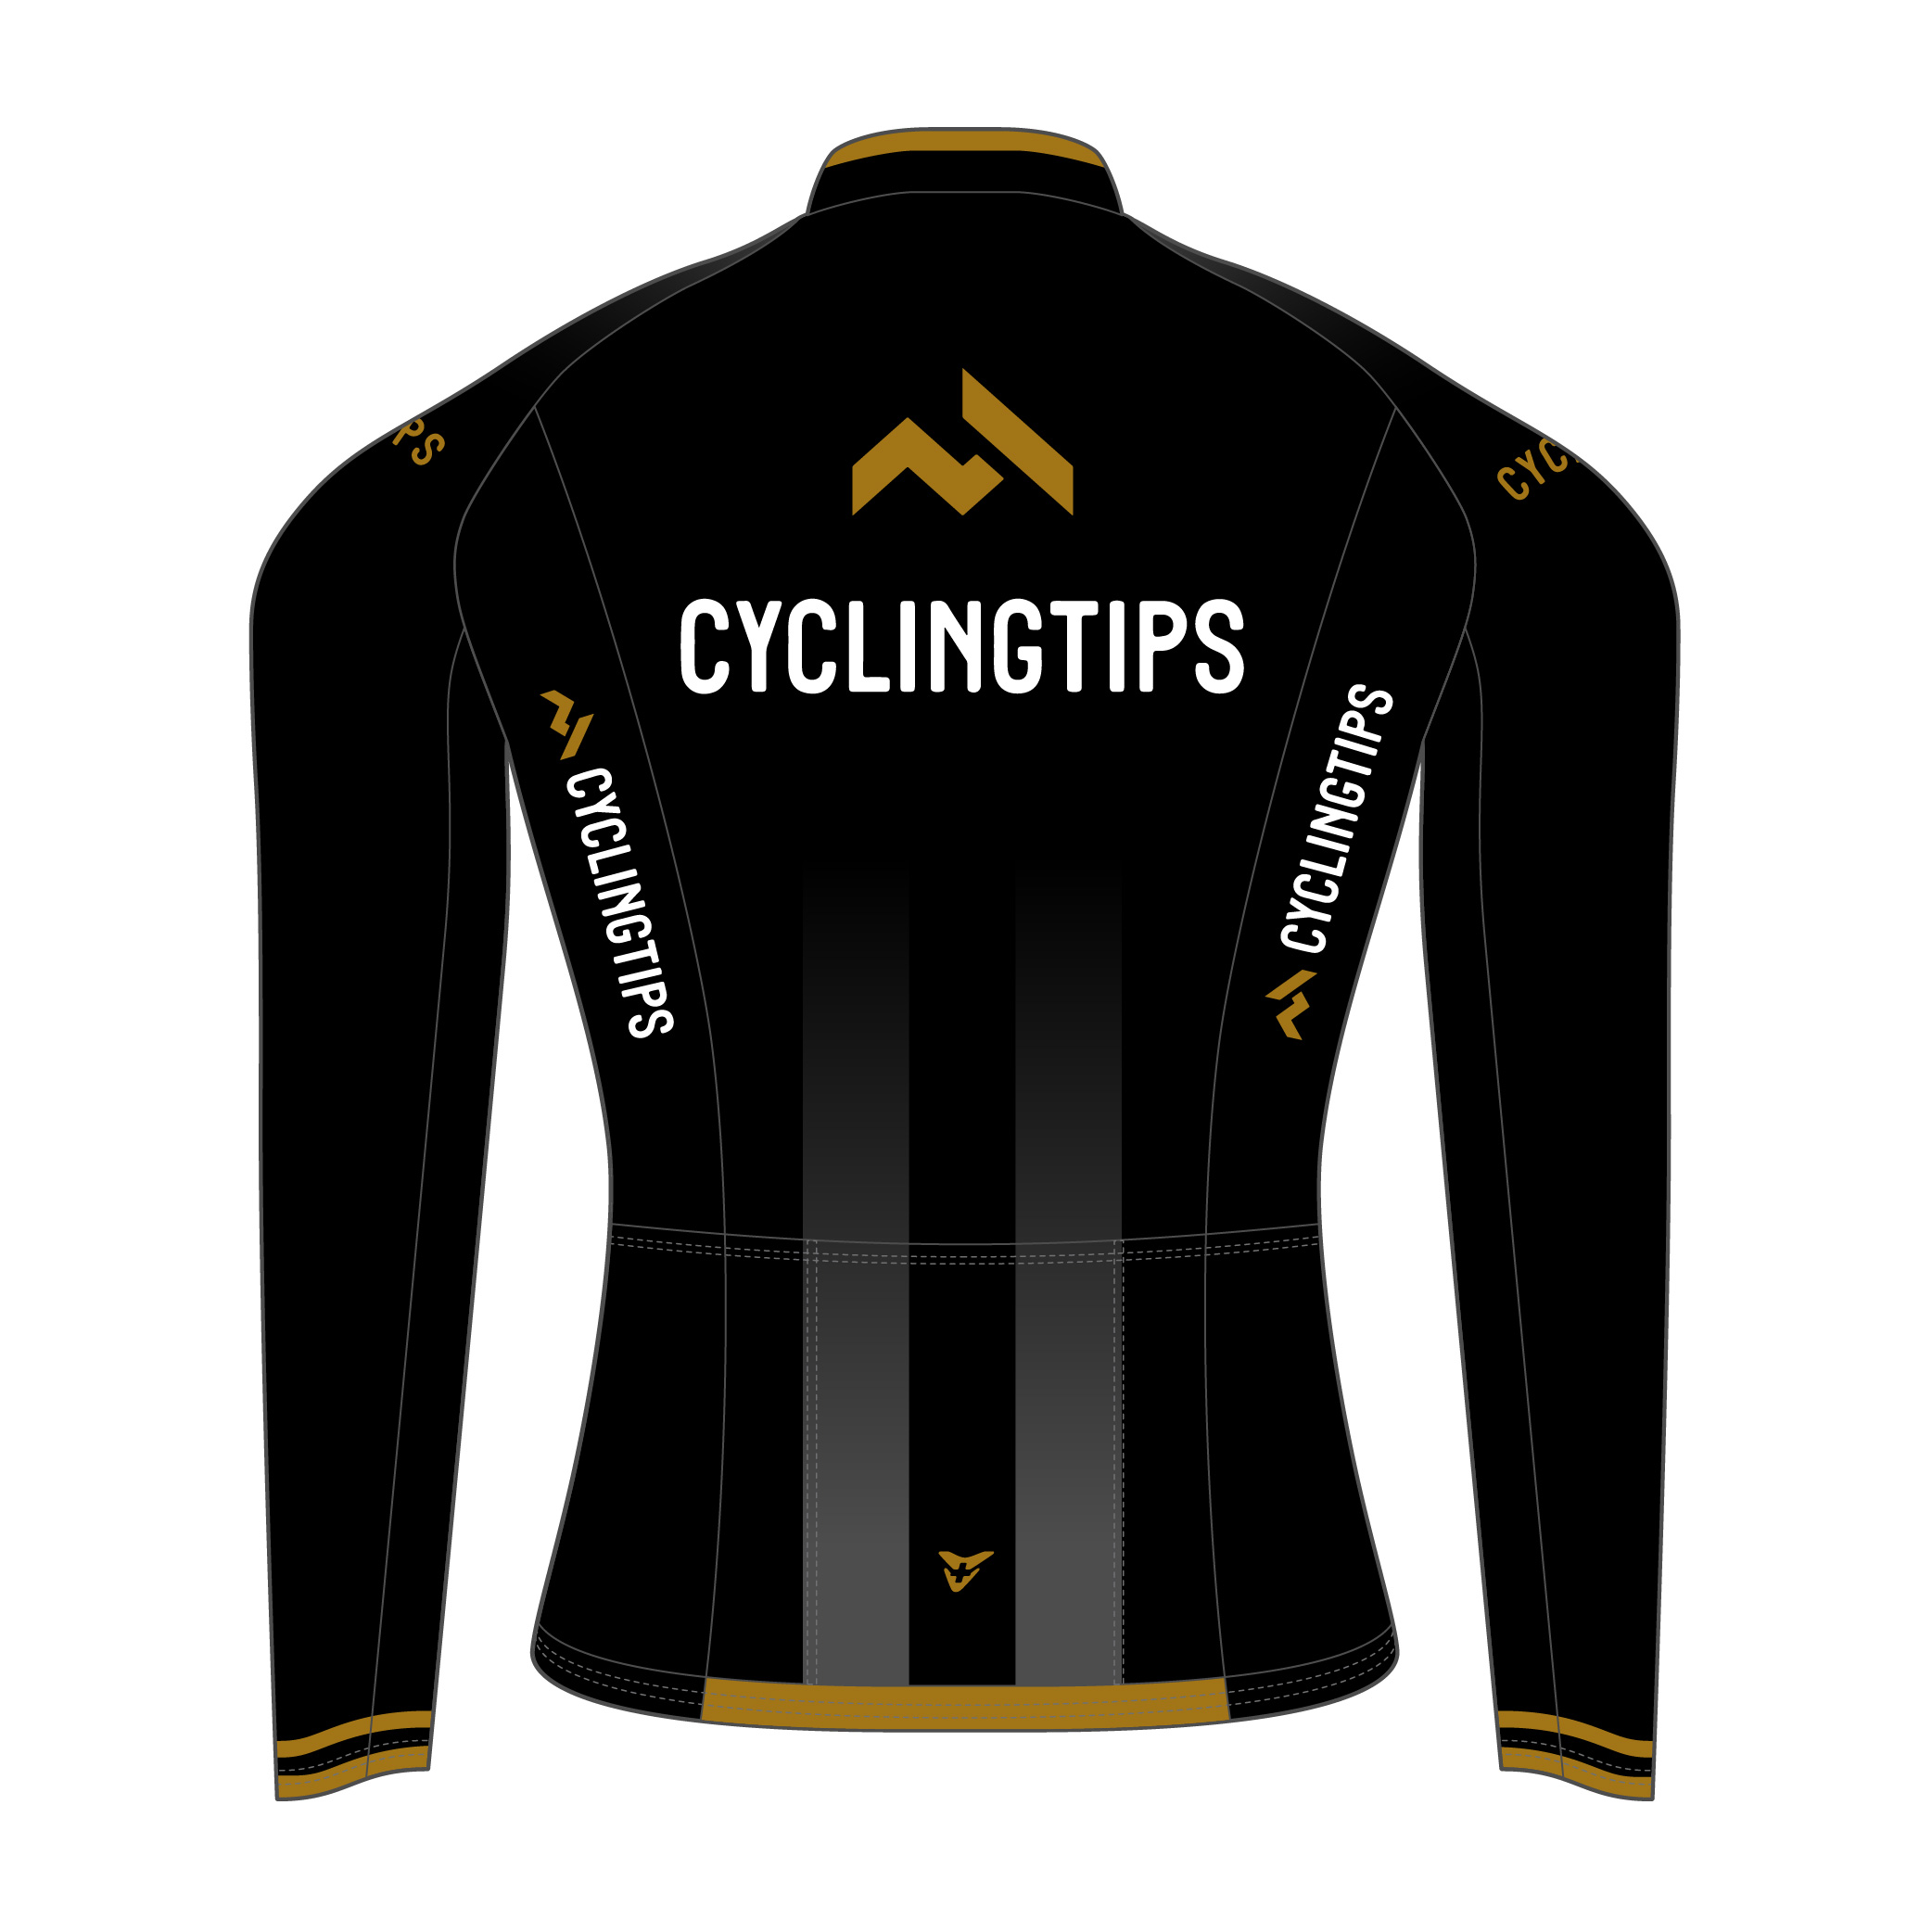 cycling-tips-22-s-52-0009-black-gold-top-back-2.jpg